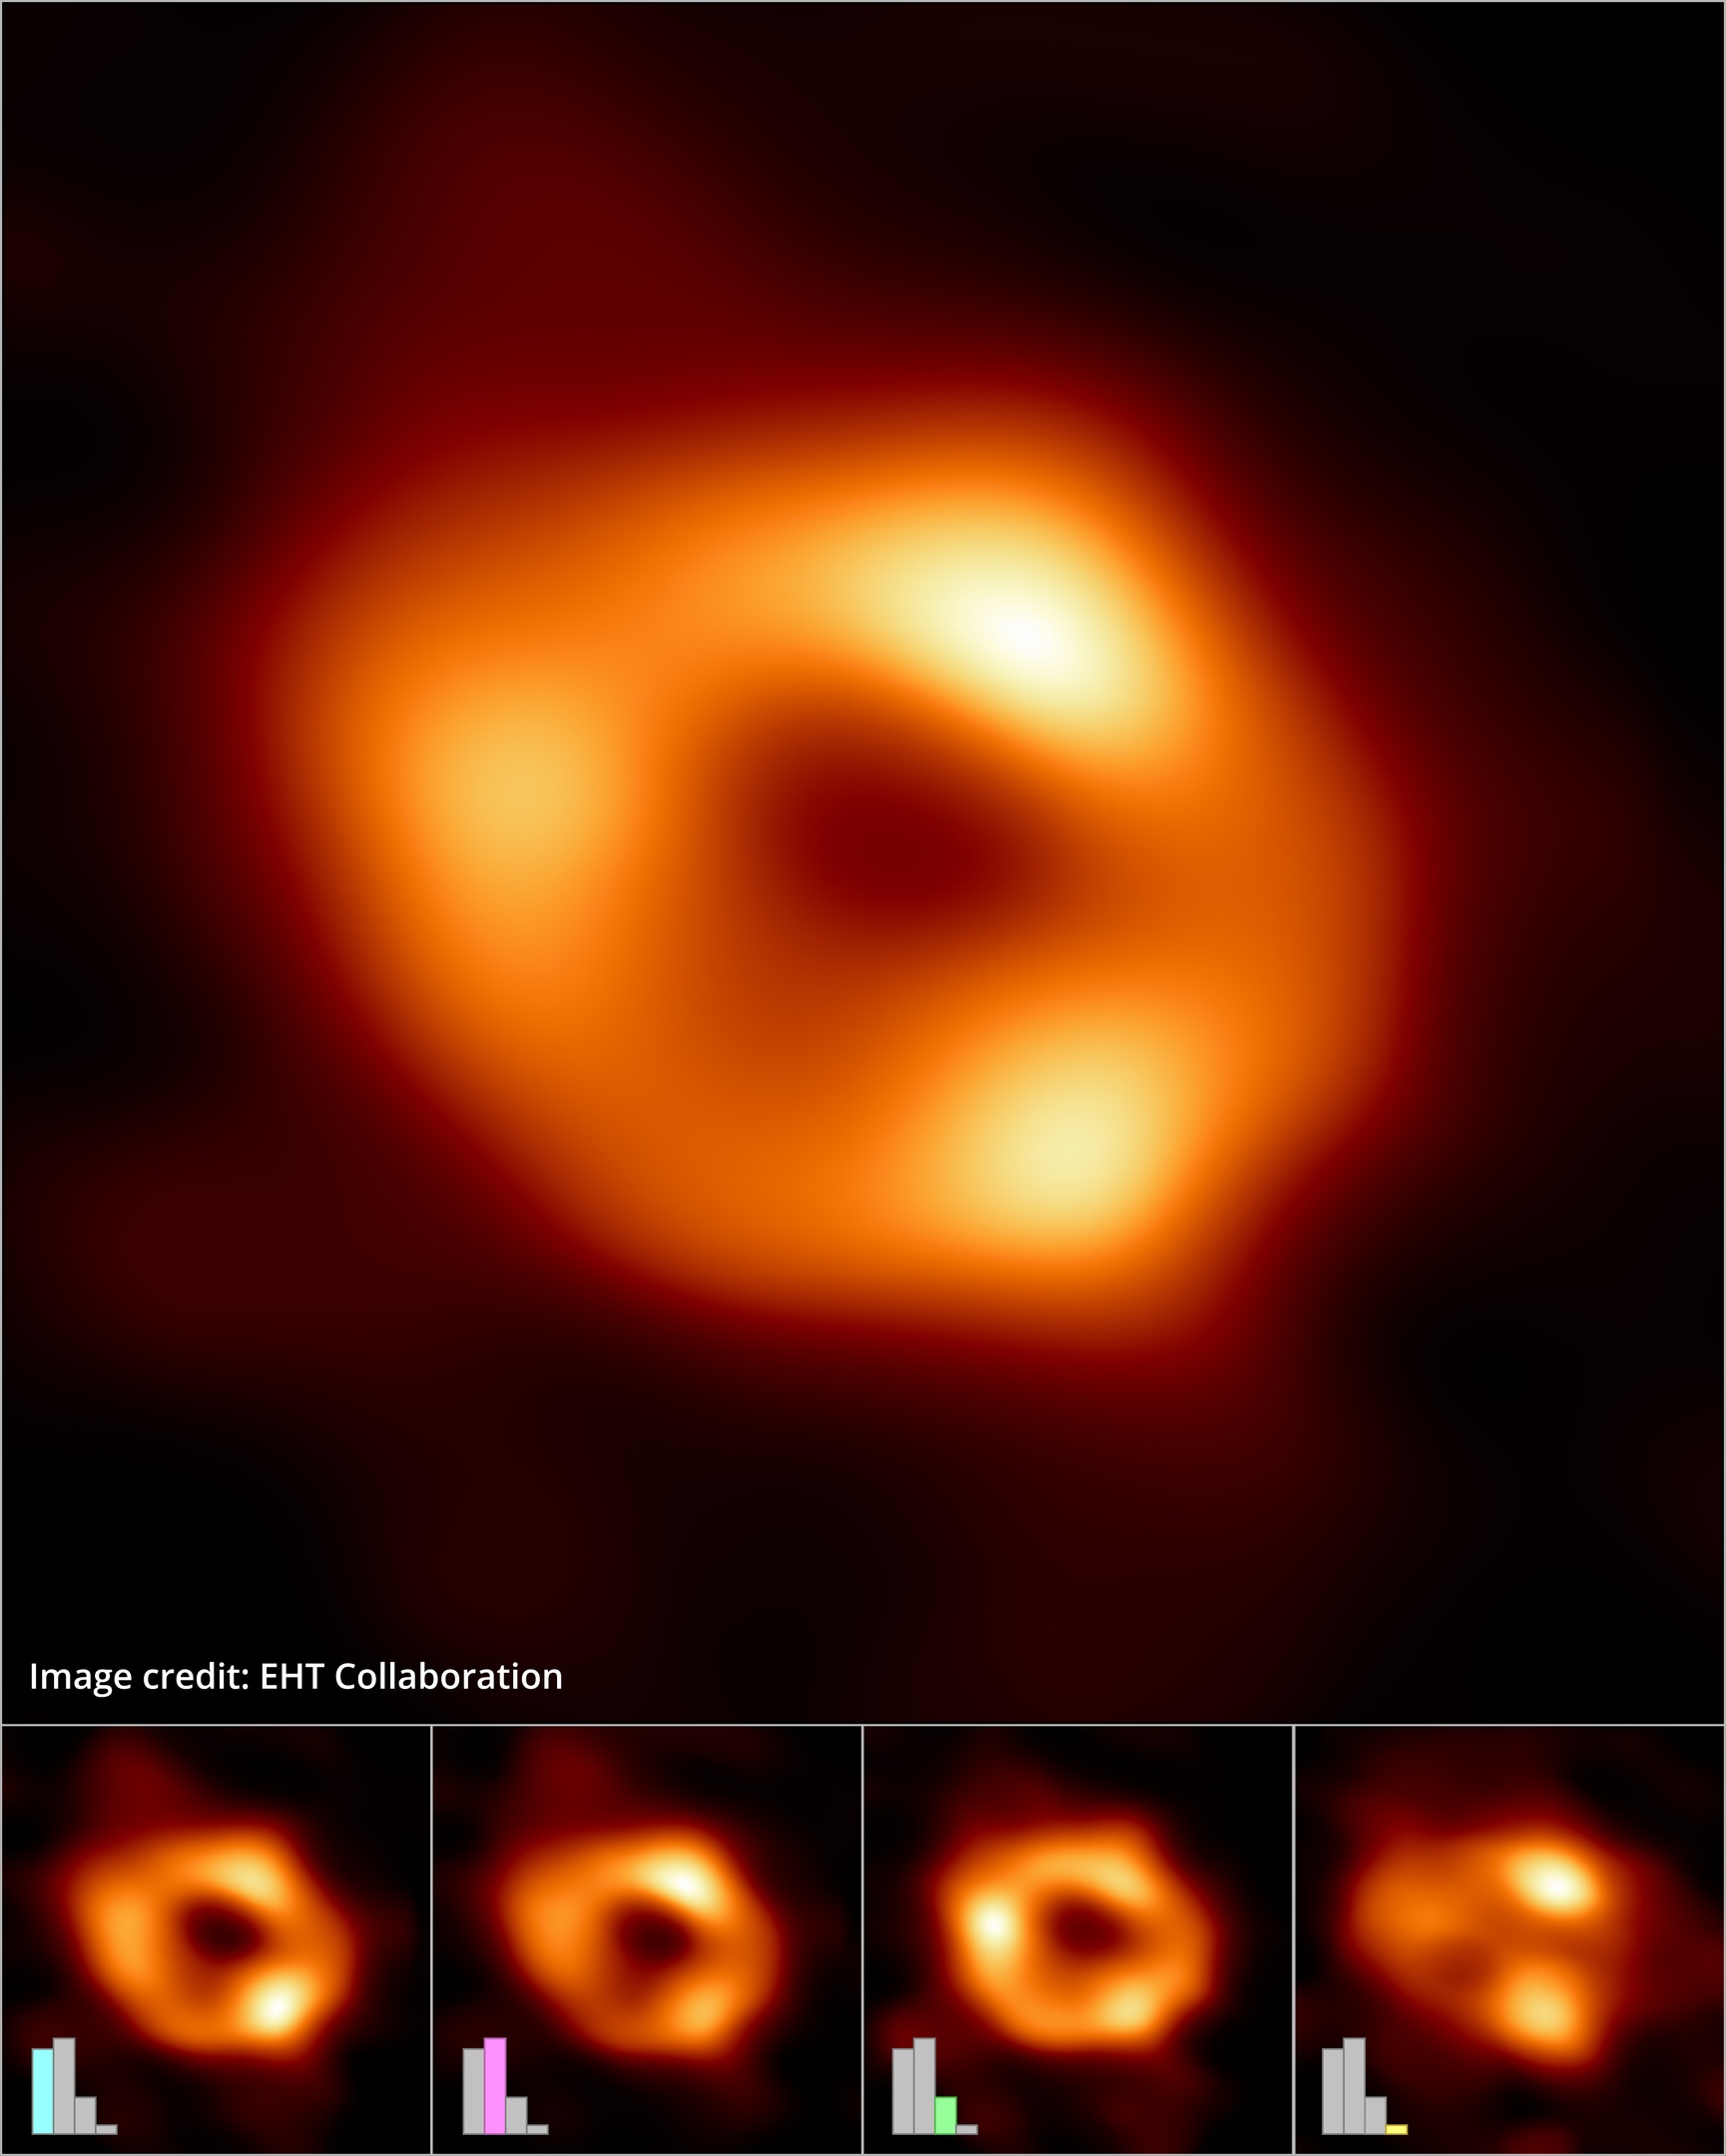 Image scientifique d'un trou noir avec 4 autres images de trou noir en dessous